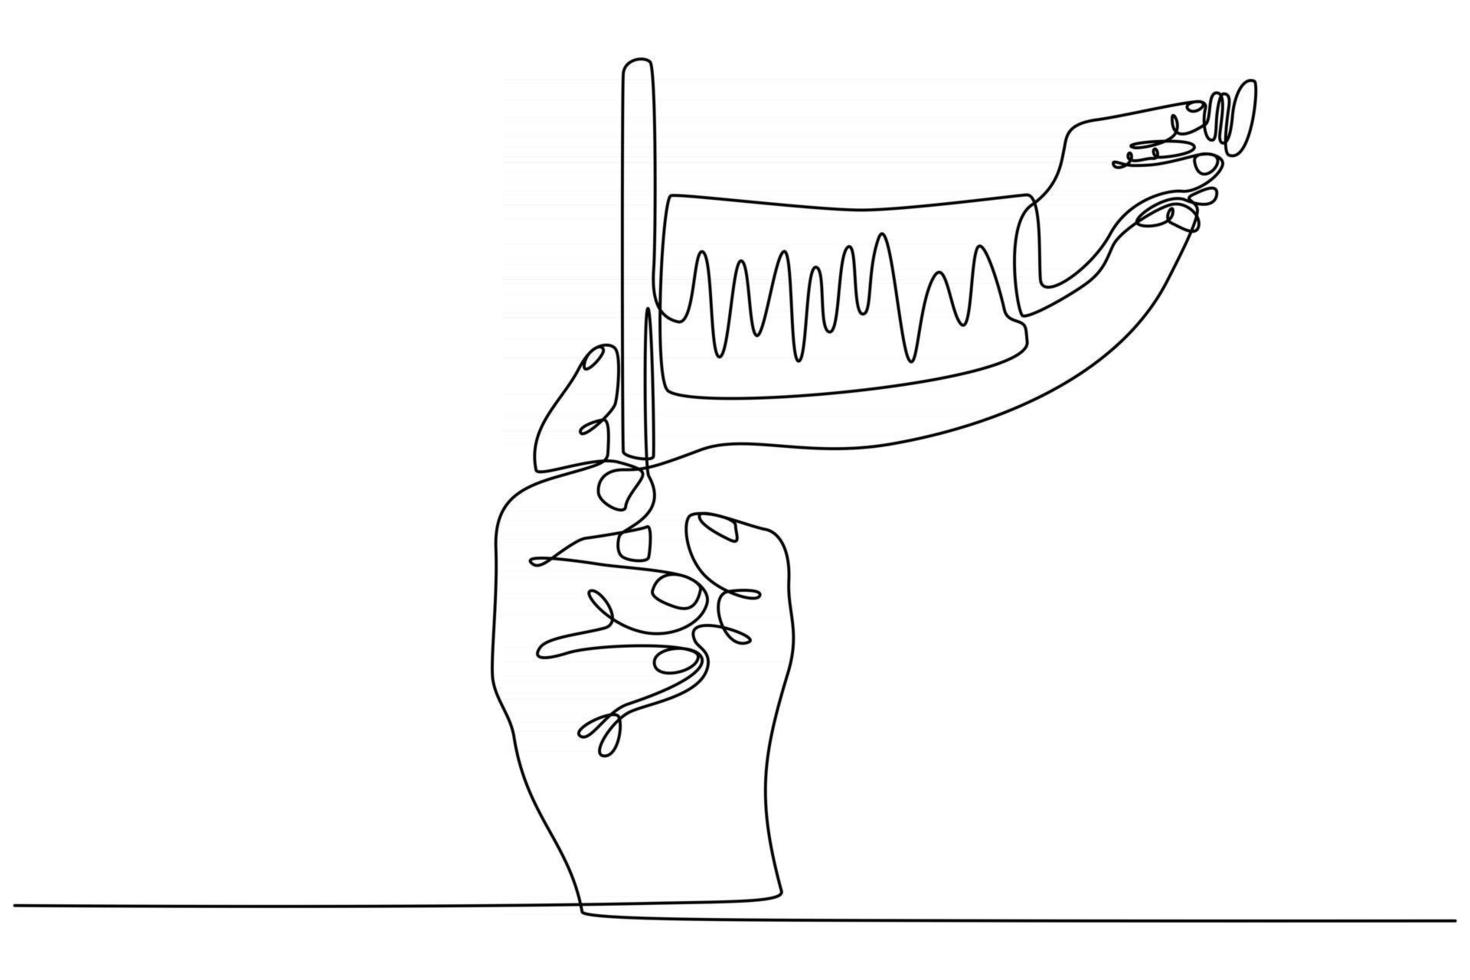 desenho de linha contínua de médico com estetoscópio na tela do semartfone ilustração vetorial vetor